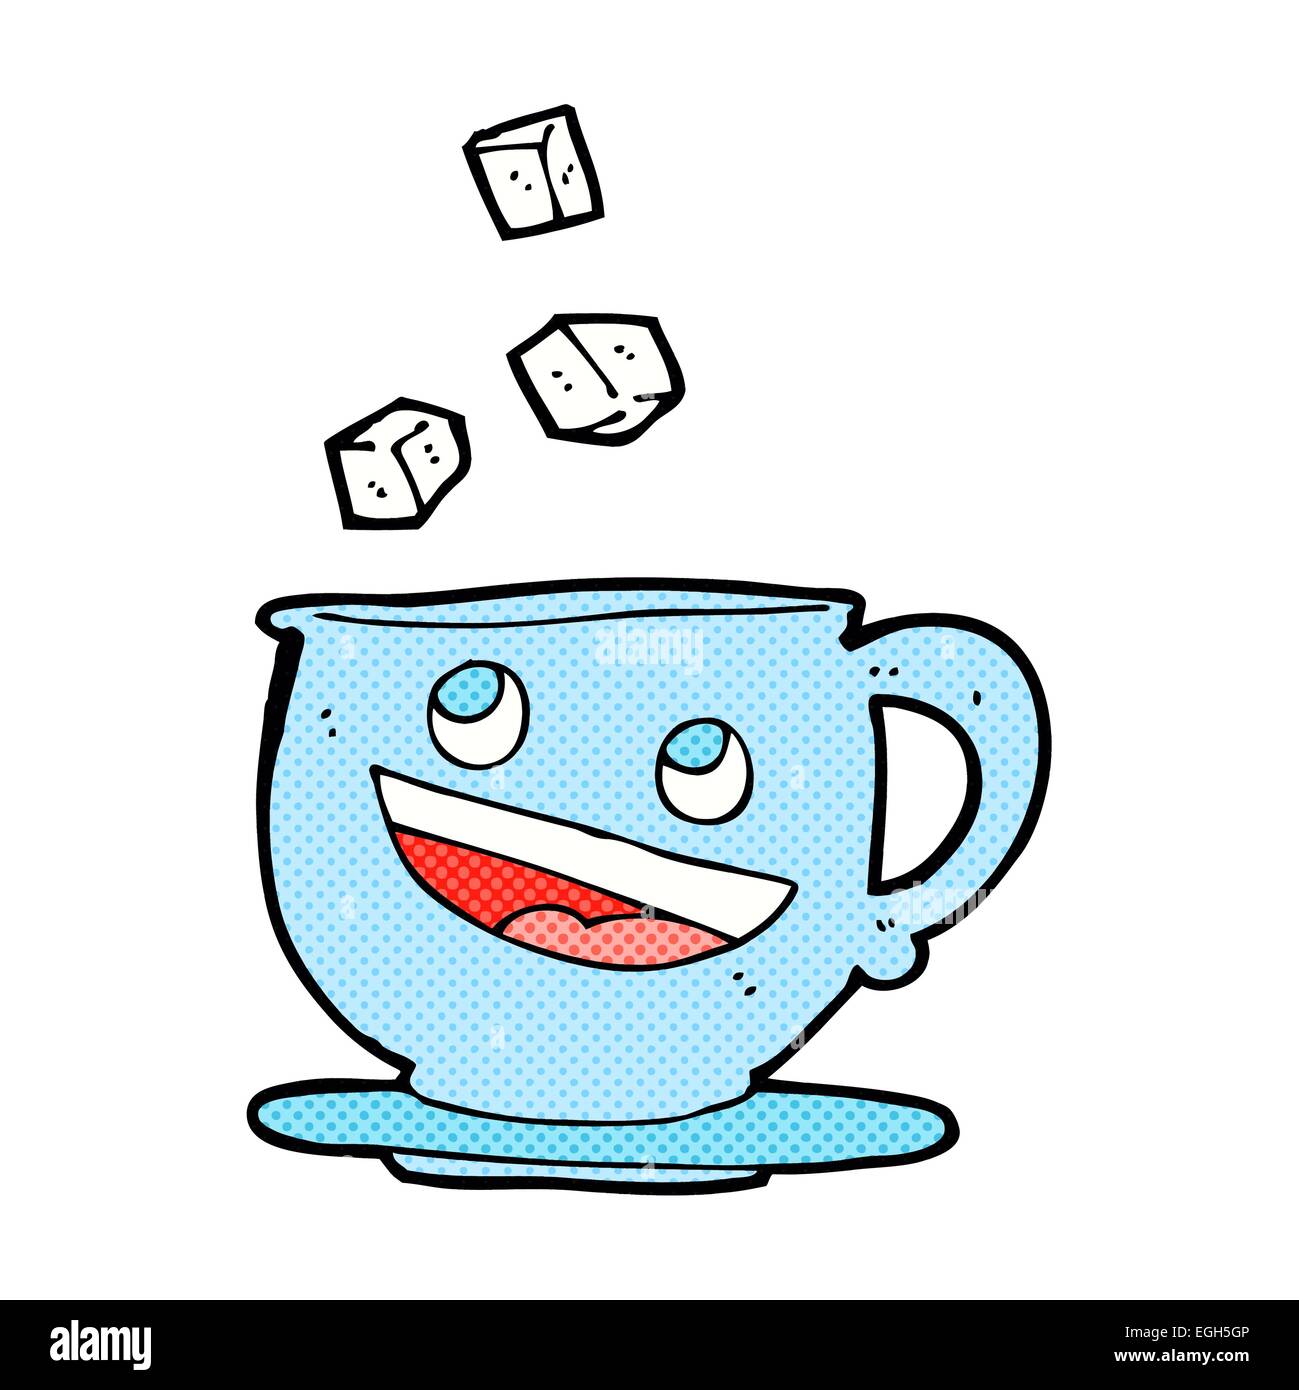 Cartoon zollette di zucchero di cadere nella tazza da tè Immagine